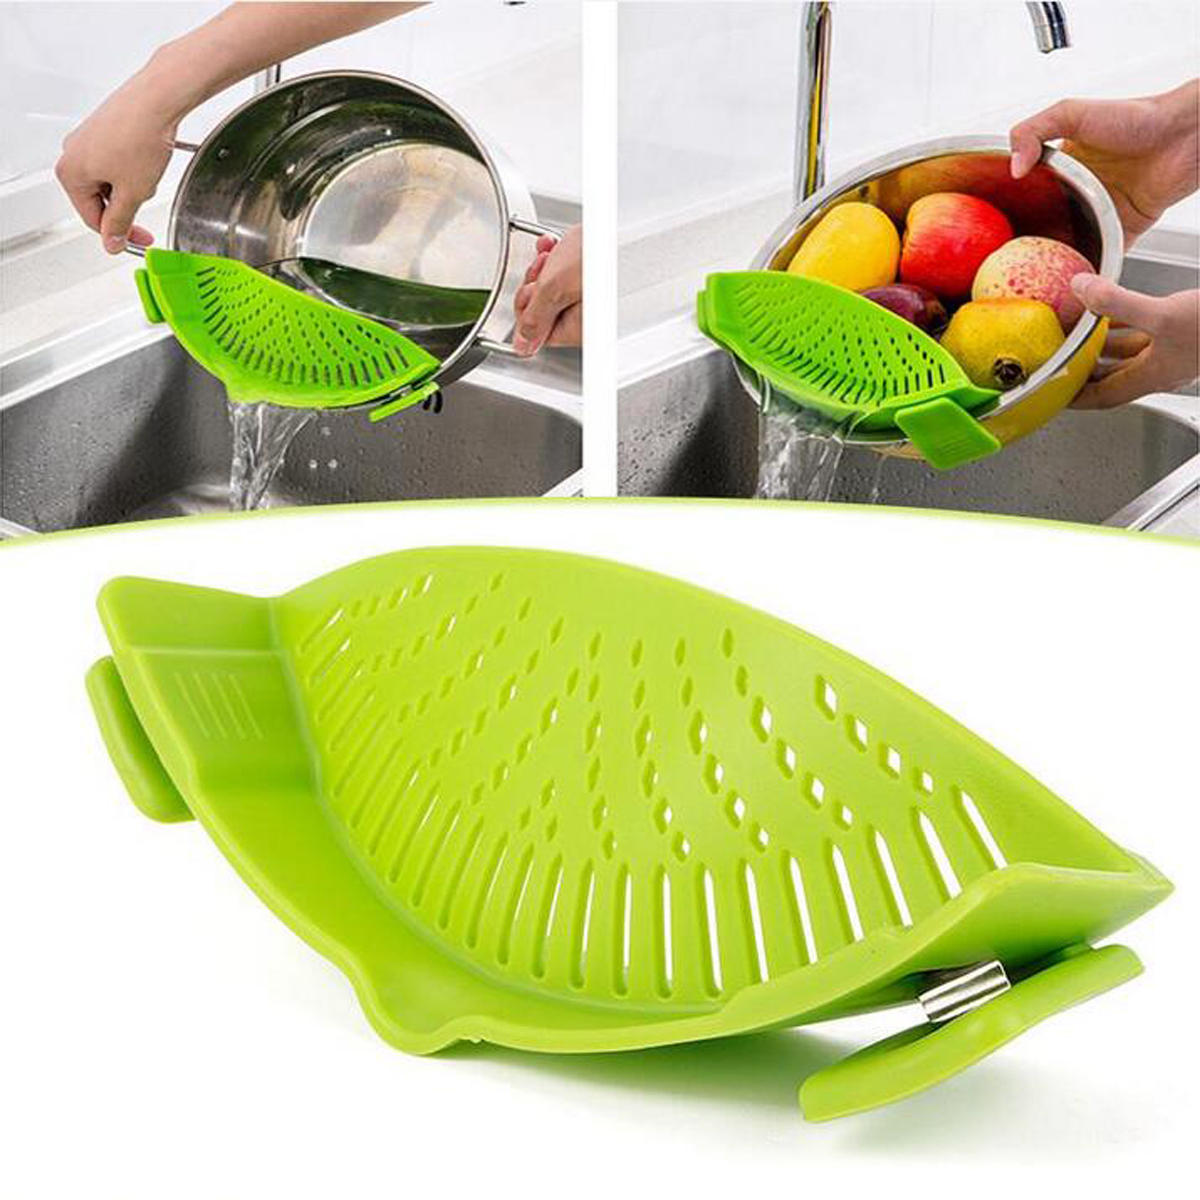 IPRee® Passoire en silicone durable Passoires Passoires Laver les fruits et légumes Pâtes Outils de cuisine Gadgets Sac de lavage